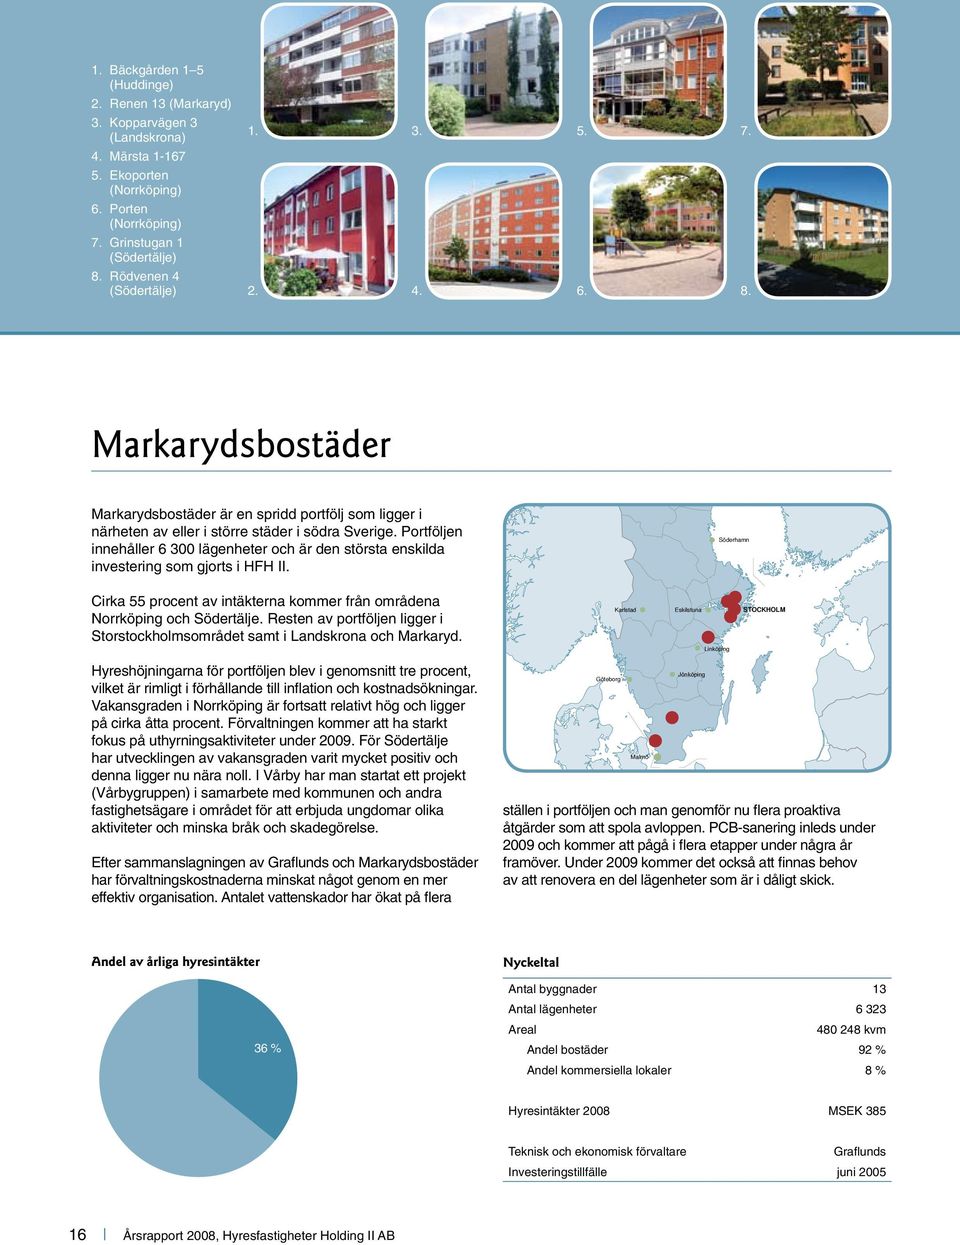 Portföljen innehåller 6 300 lägenheter och är den största enskilda investering som gjorts i HFH II. Söderhamn Cirka 55 procent av intäkterna kommer från områdena Norrköping och Södertälje.